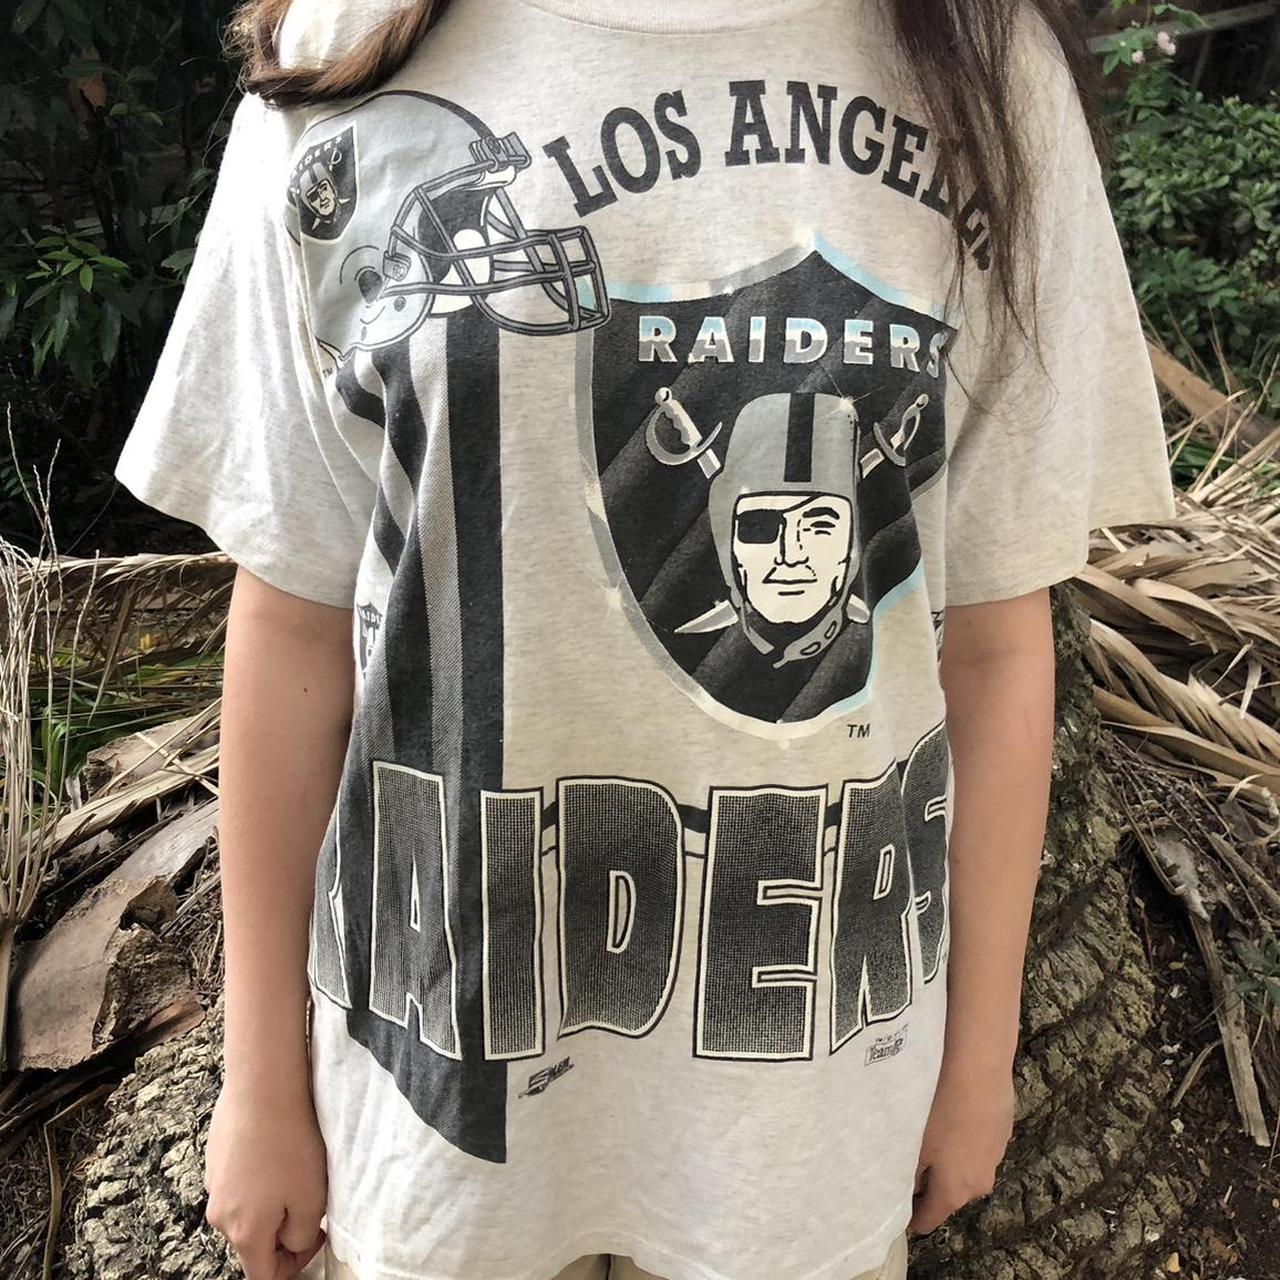 Raiders tee shirt from 1991 , Size : medium